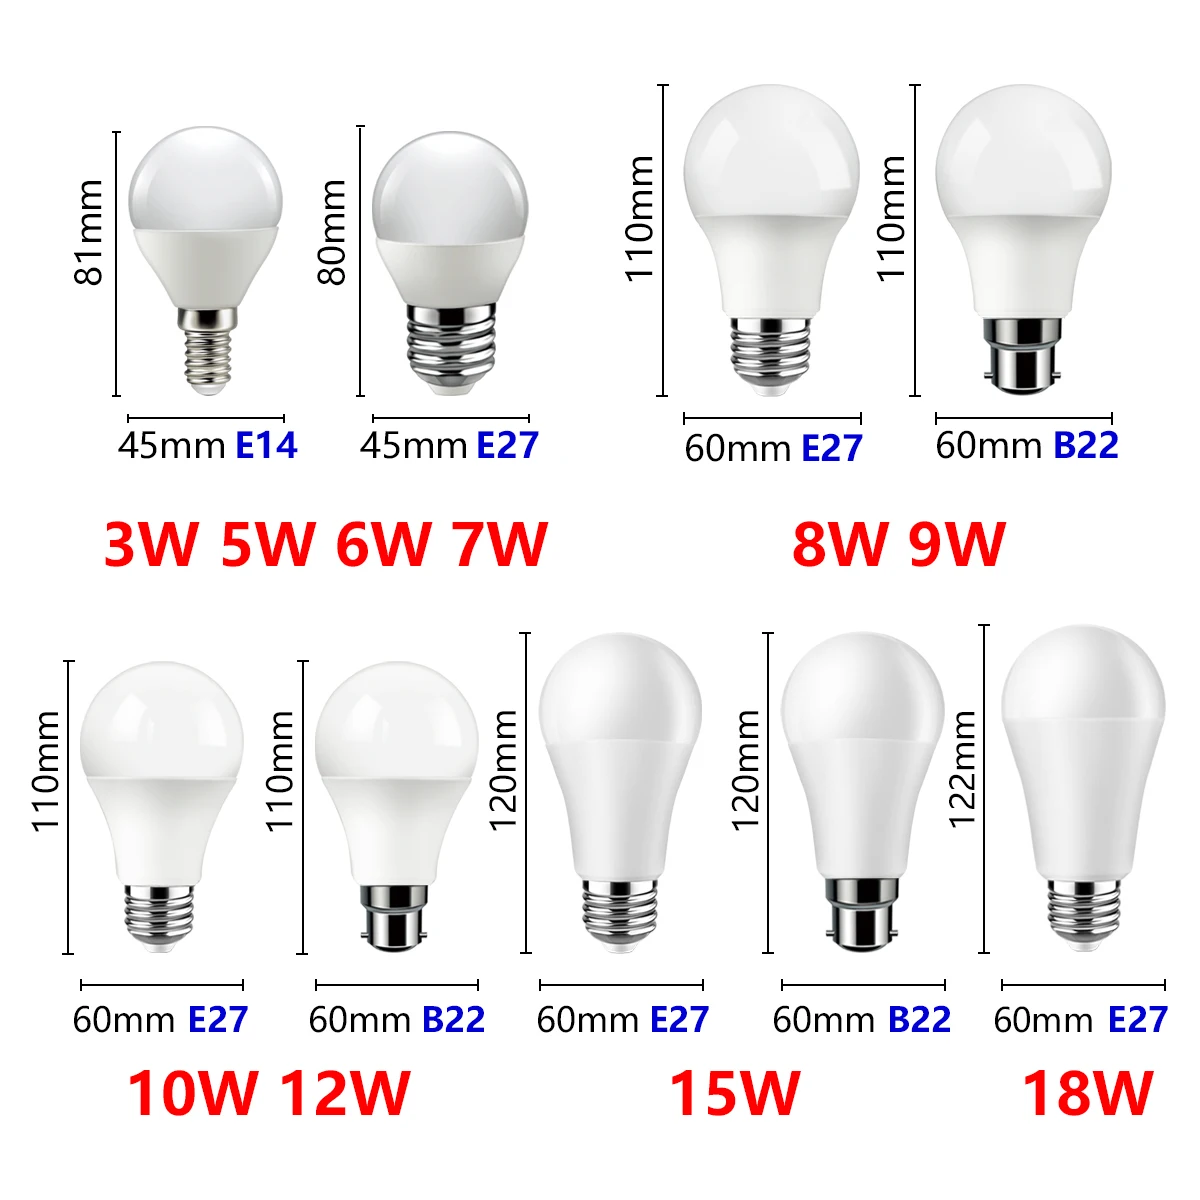 8PCS נורת LED 220V Lampara E14 E27 Led B22 אור אור גבוהה, יעילות מתח גבוה 3W-18W נברשת תאורה מנורת הבית. - 1